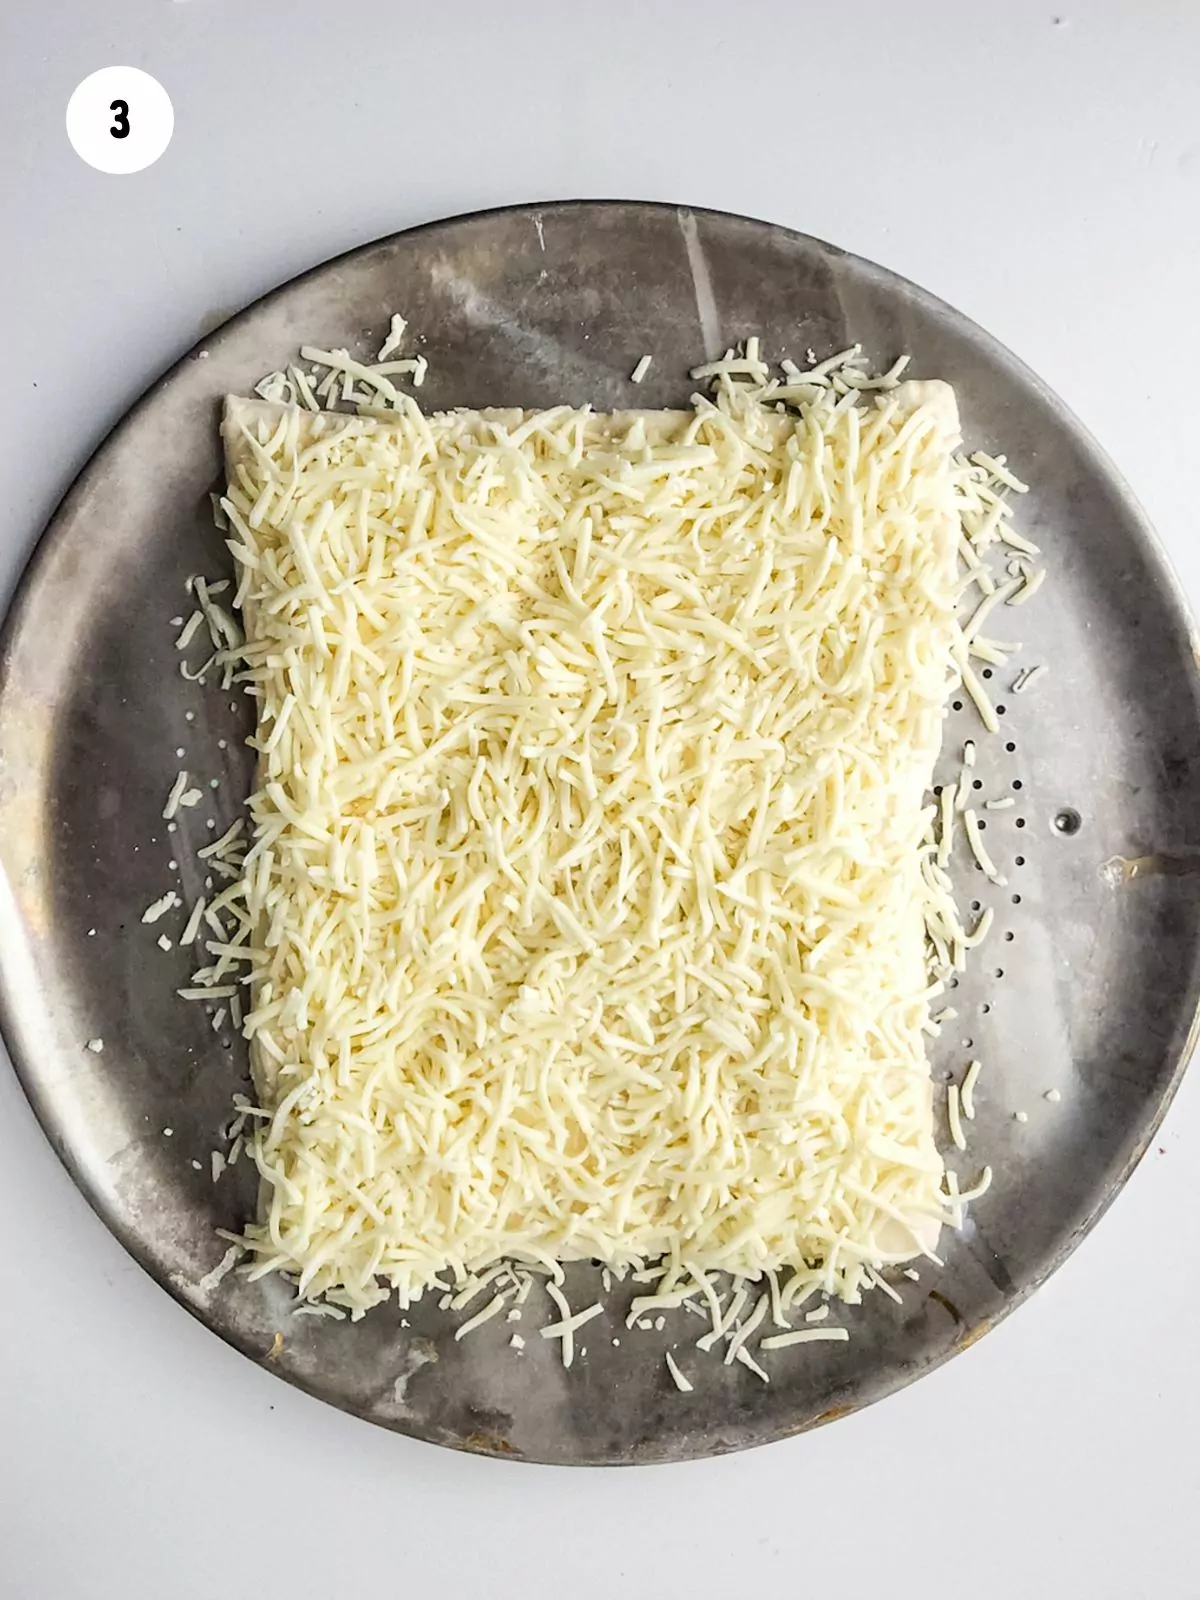 Add mozzarella and parmesan cheese